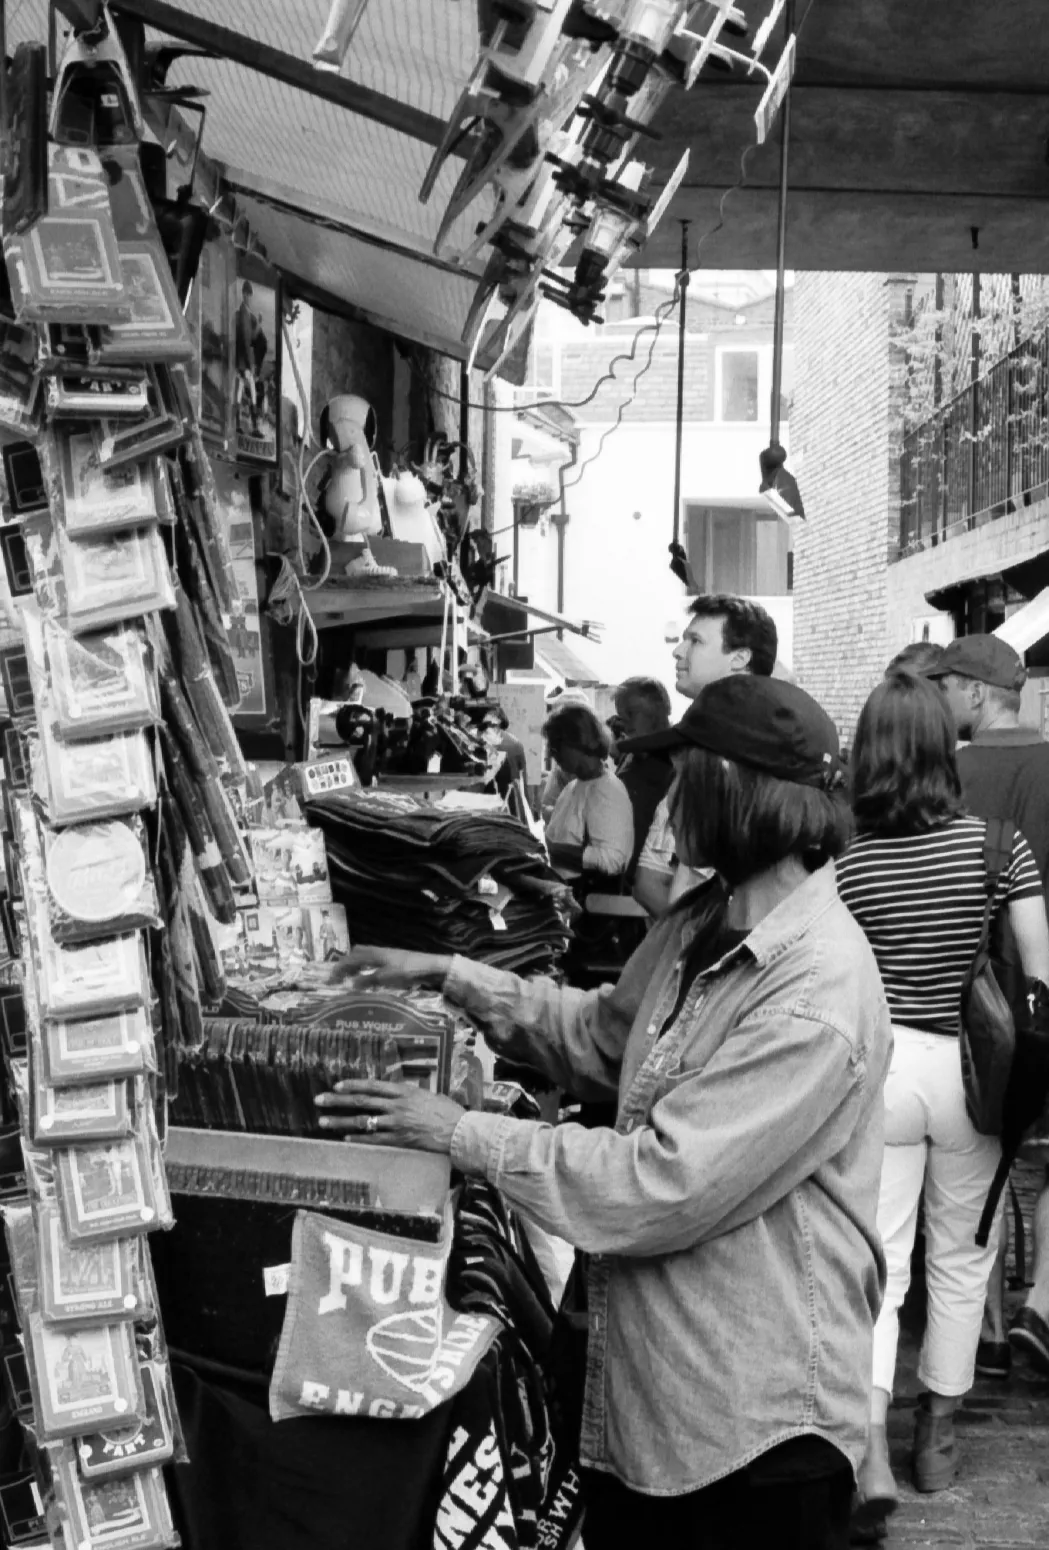 Collector. Portobello Market, London, England. April 2000